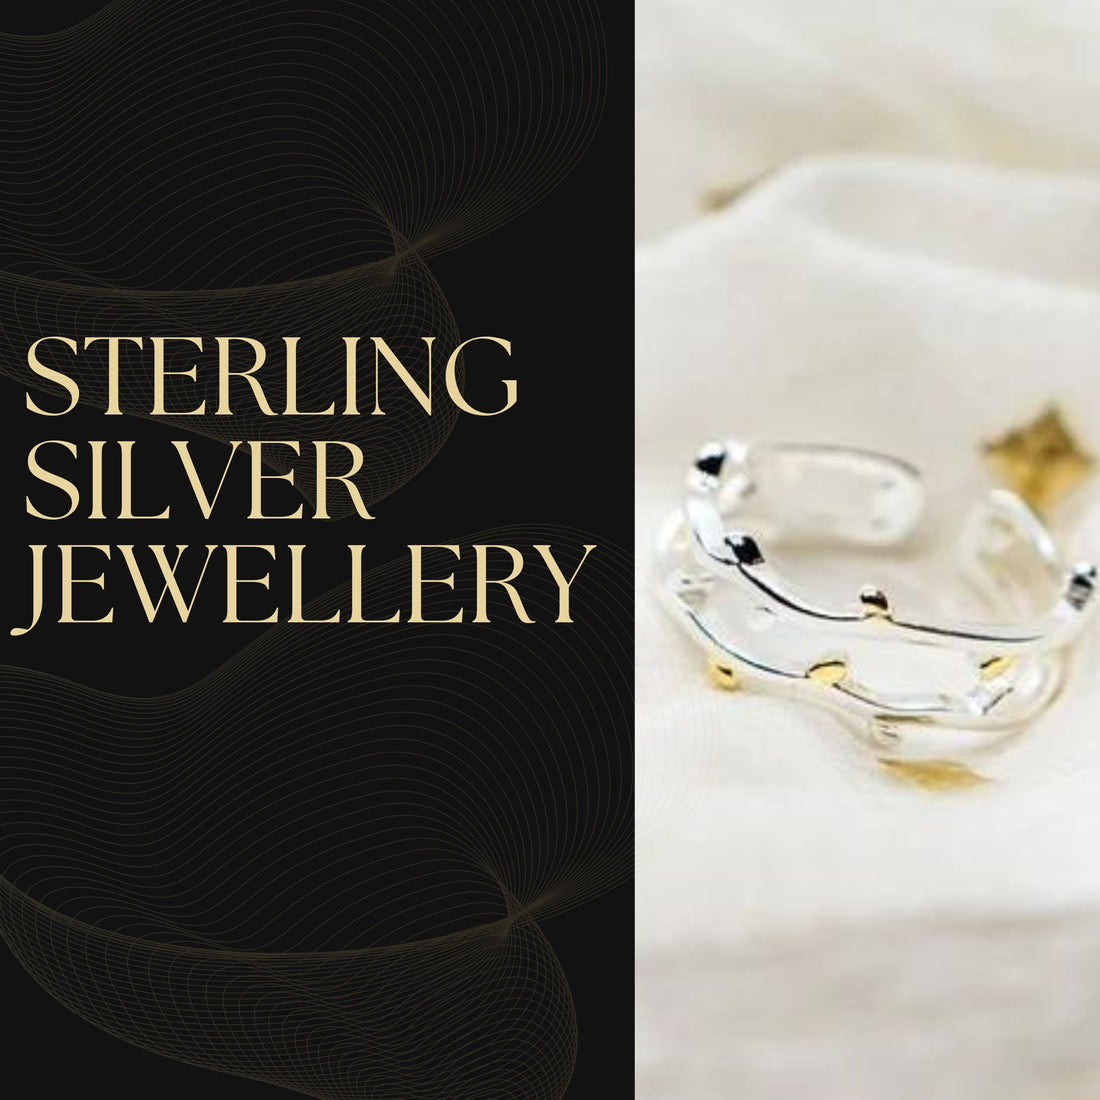 Best Sterling Silver Jewelry